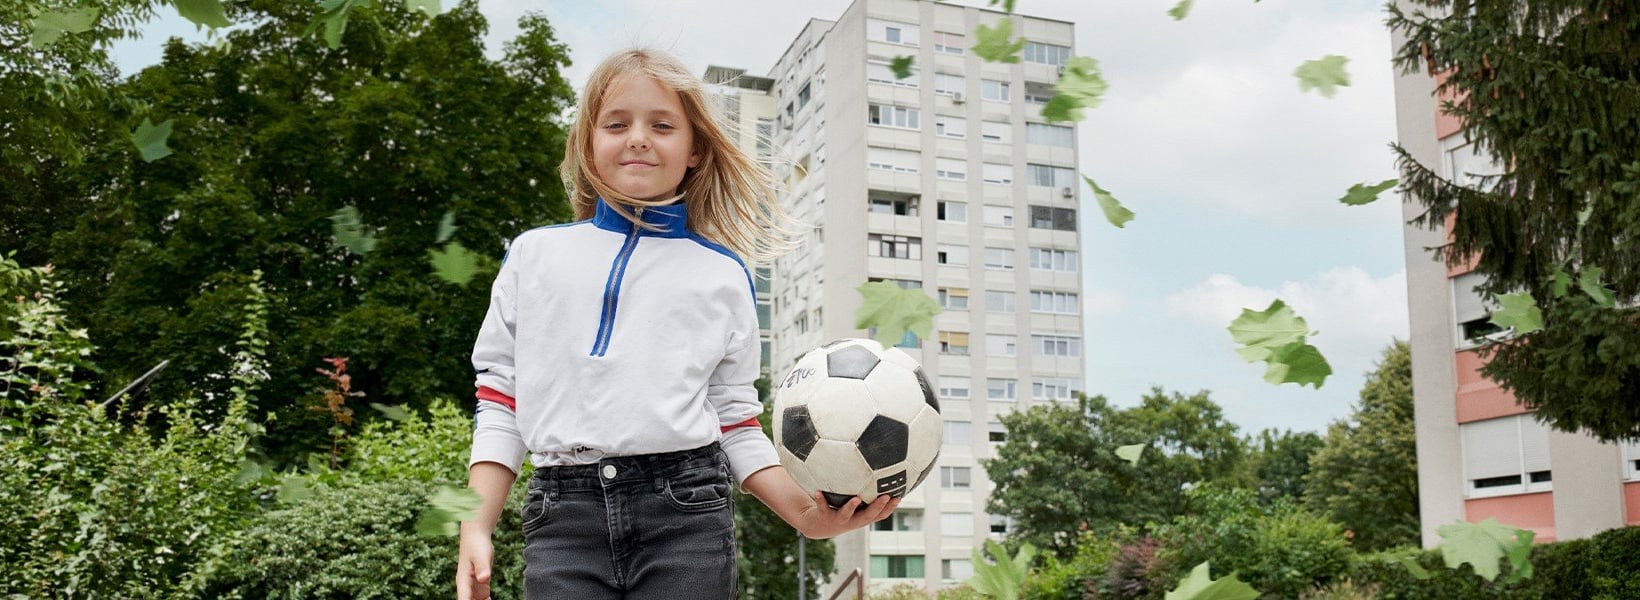 Ein Mädchen mit einem Fußball in der Hand